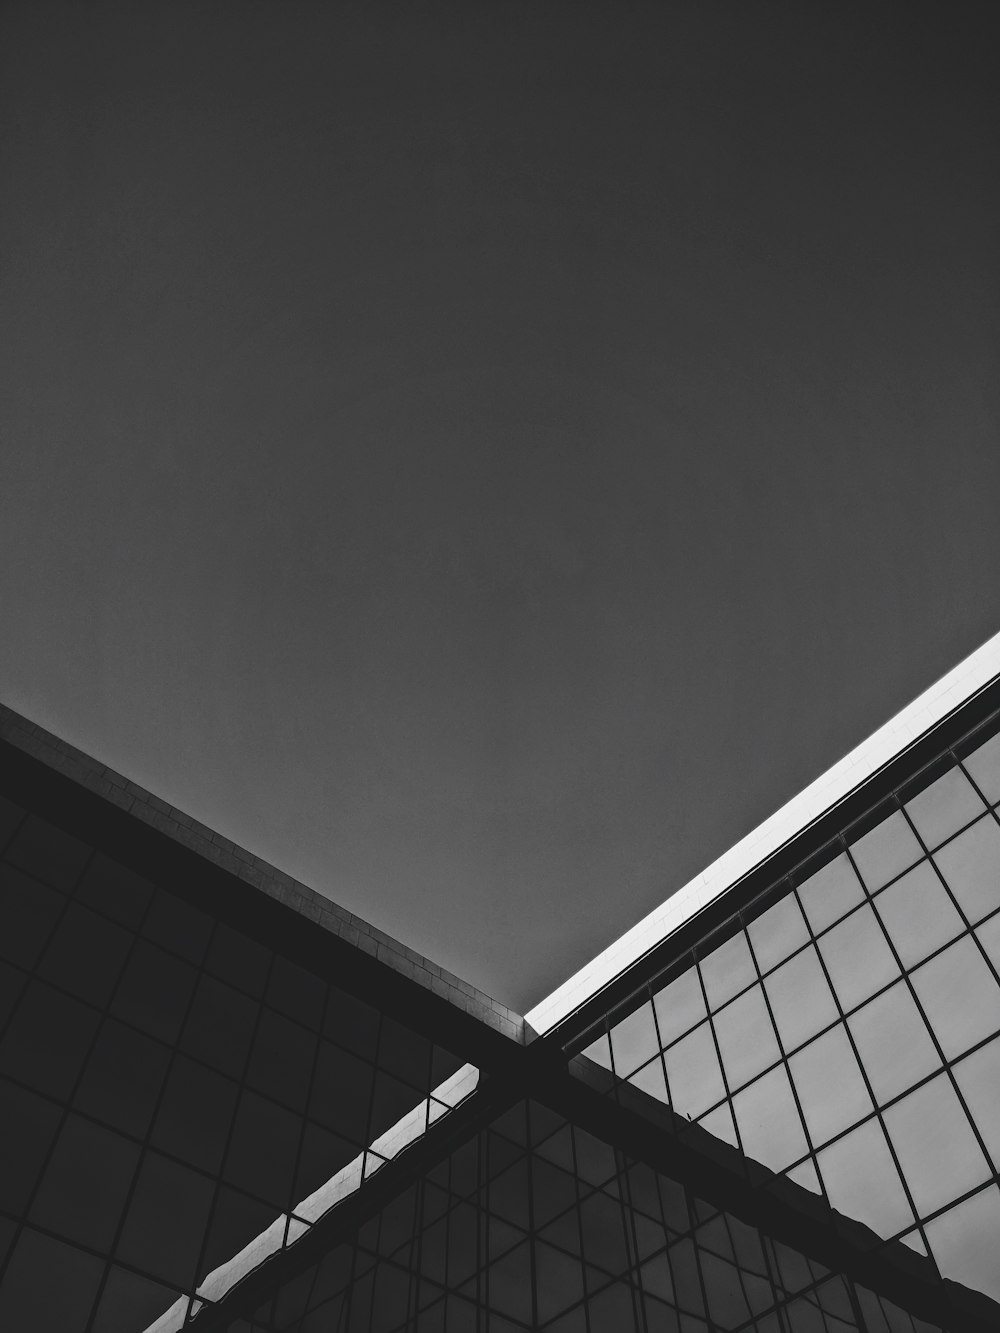 Ein Schwarz-Weiß-Foto des Daches eines Gebäudes